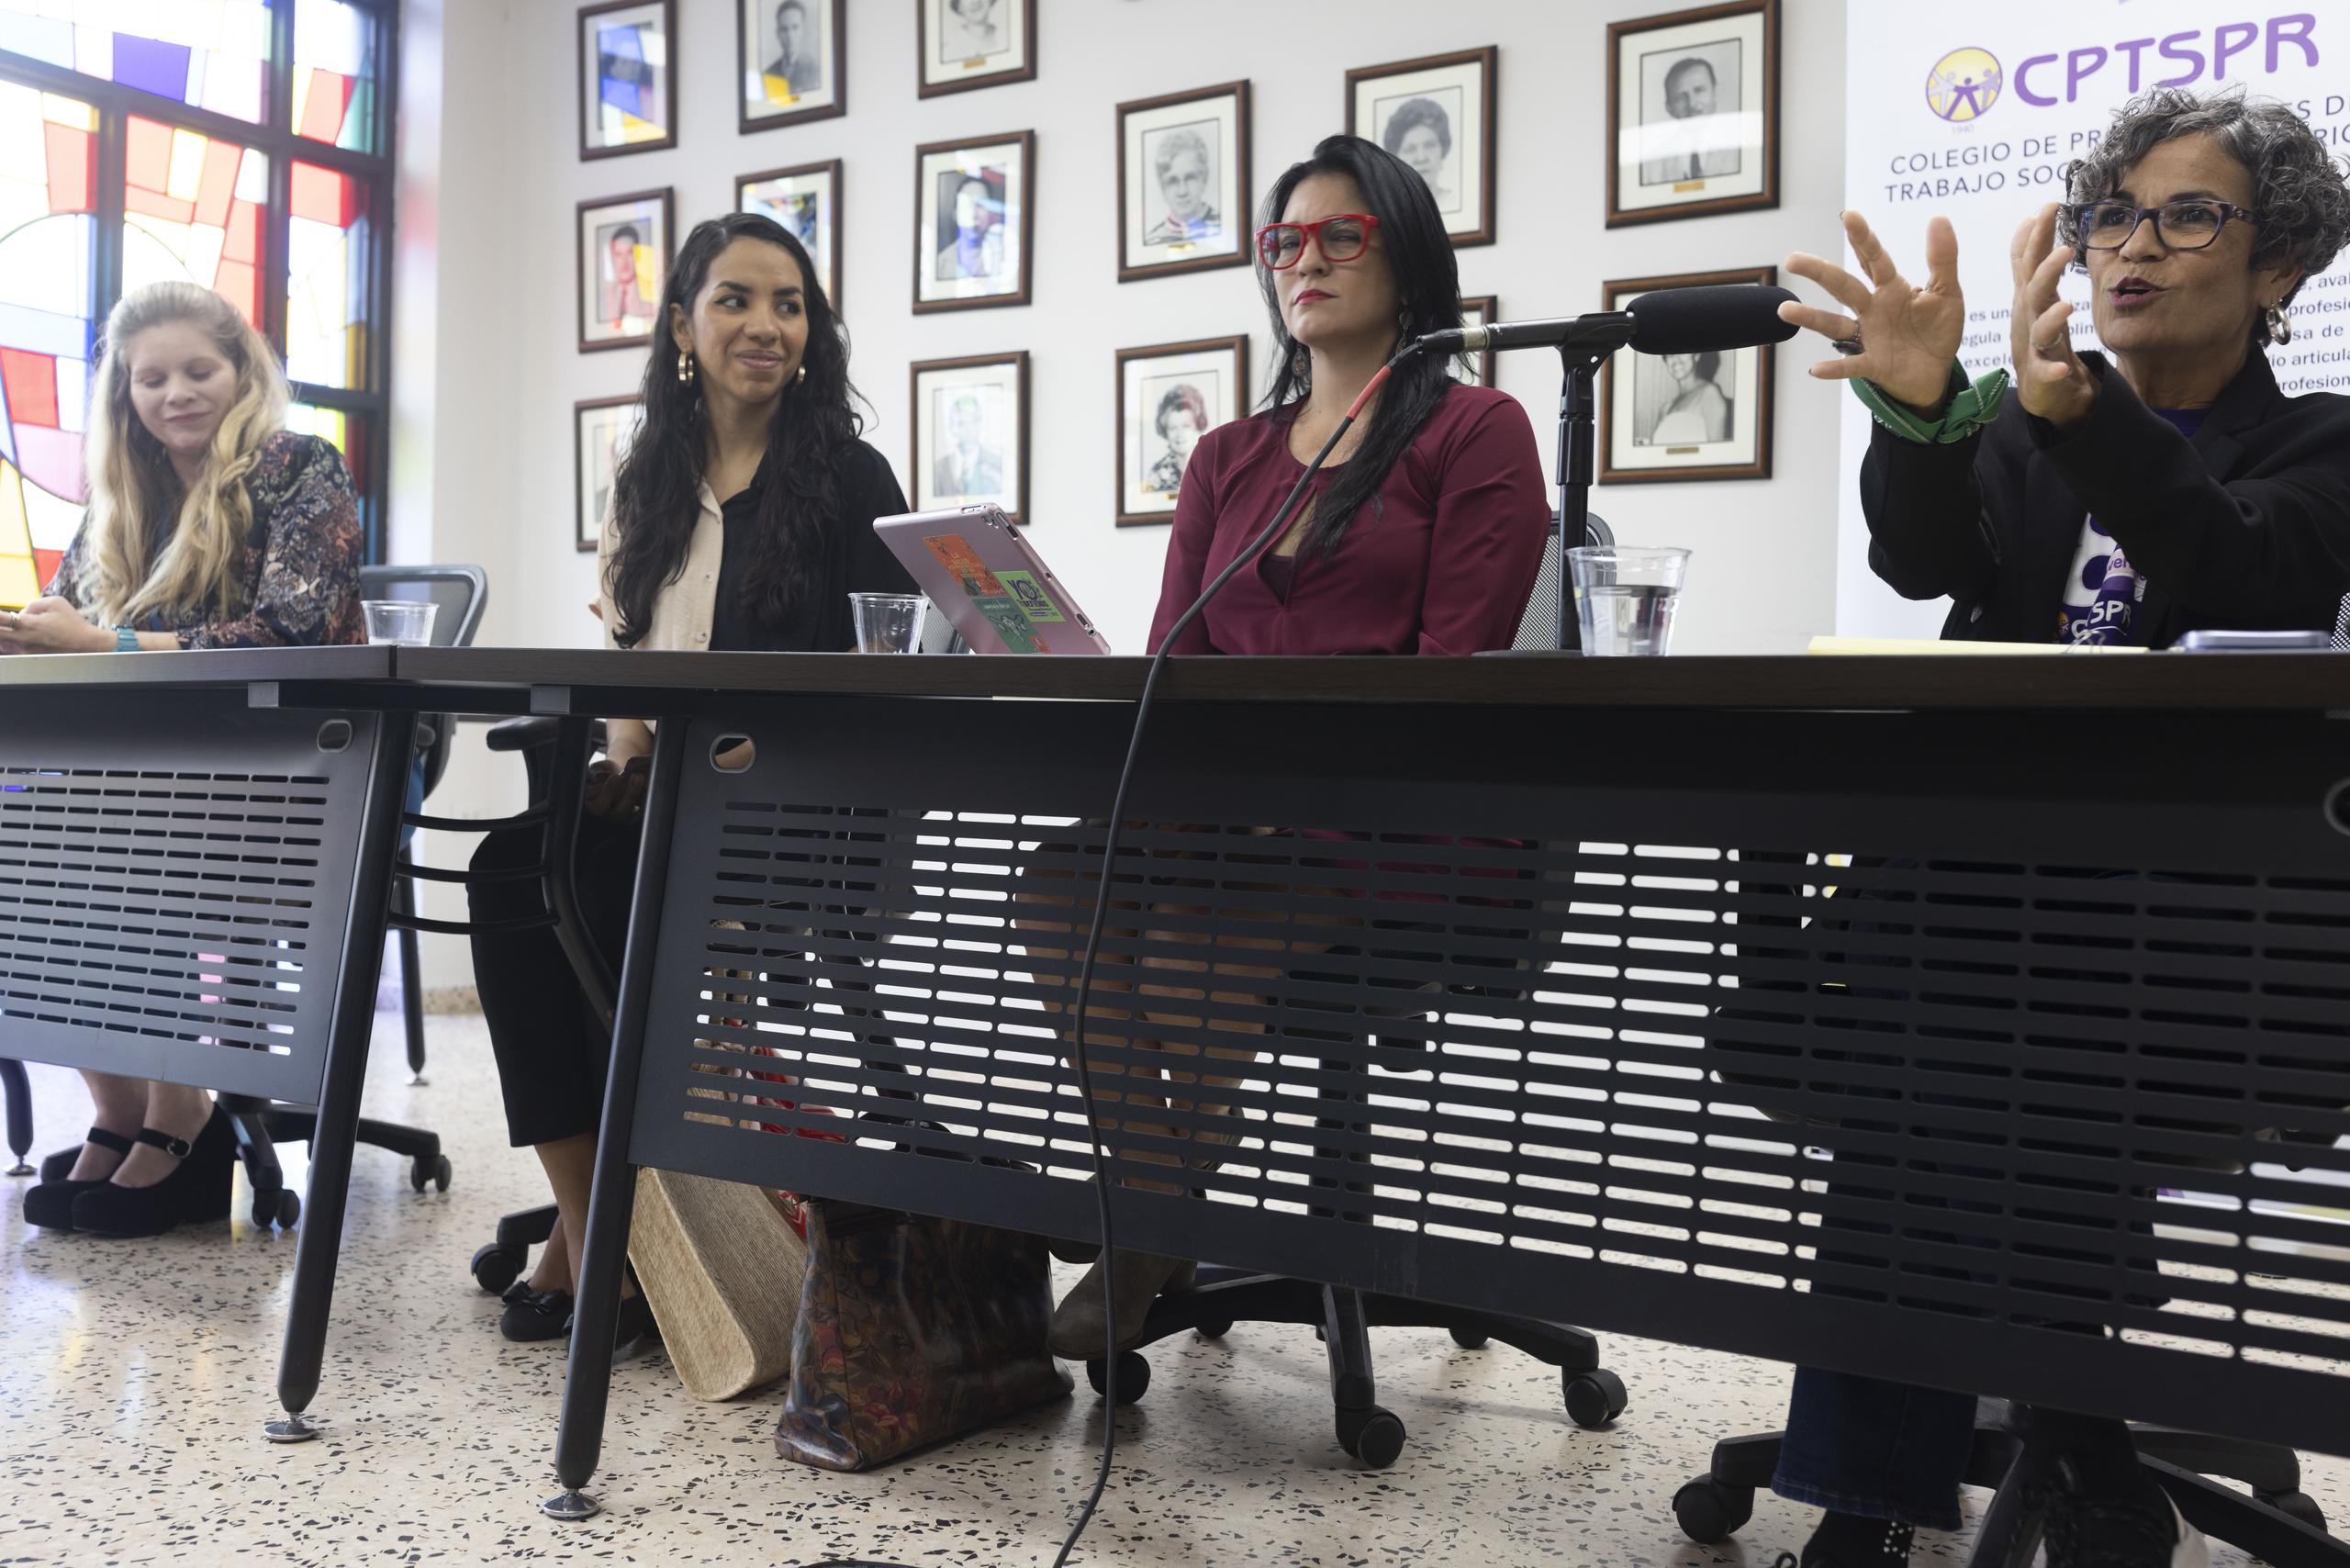 De izquierda a derecha, Alejandra Maldonado, abogada y sobreviviente a la violencia de genero, Yomaira Torres, Tania Rosario y Mabel T. Lopez Ortiz.